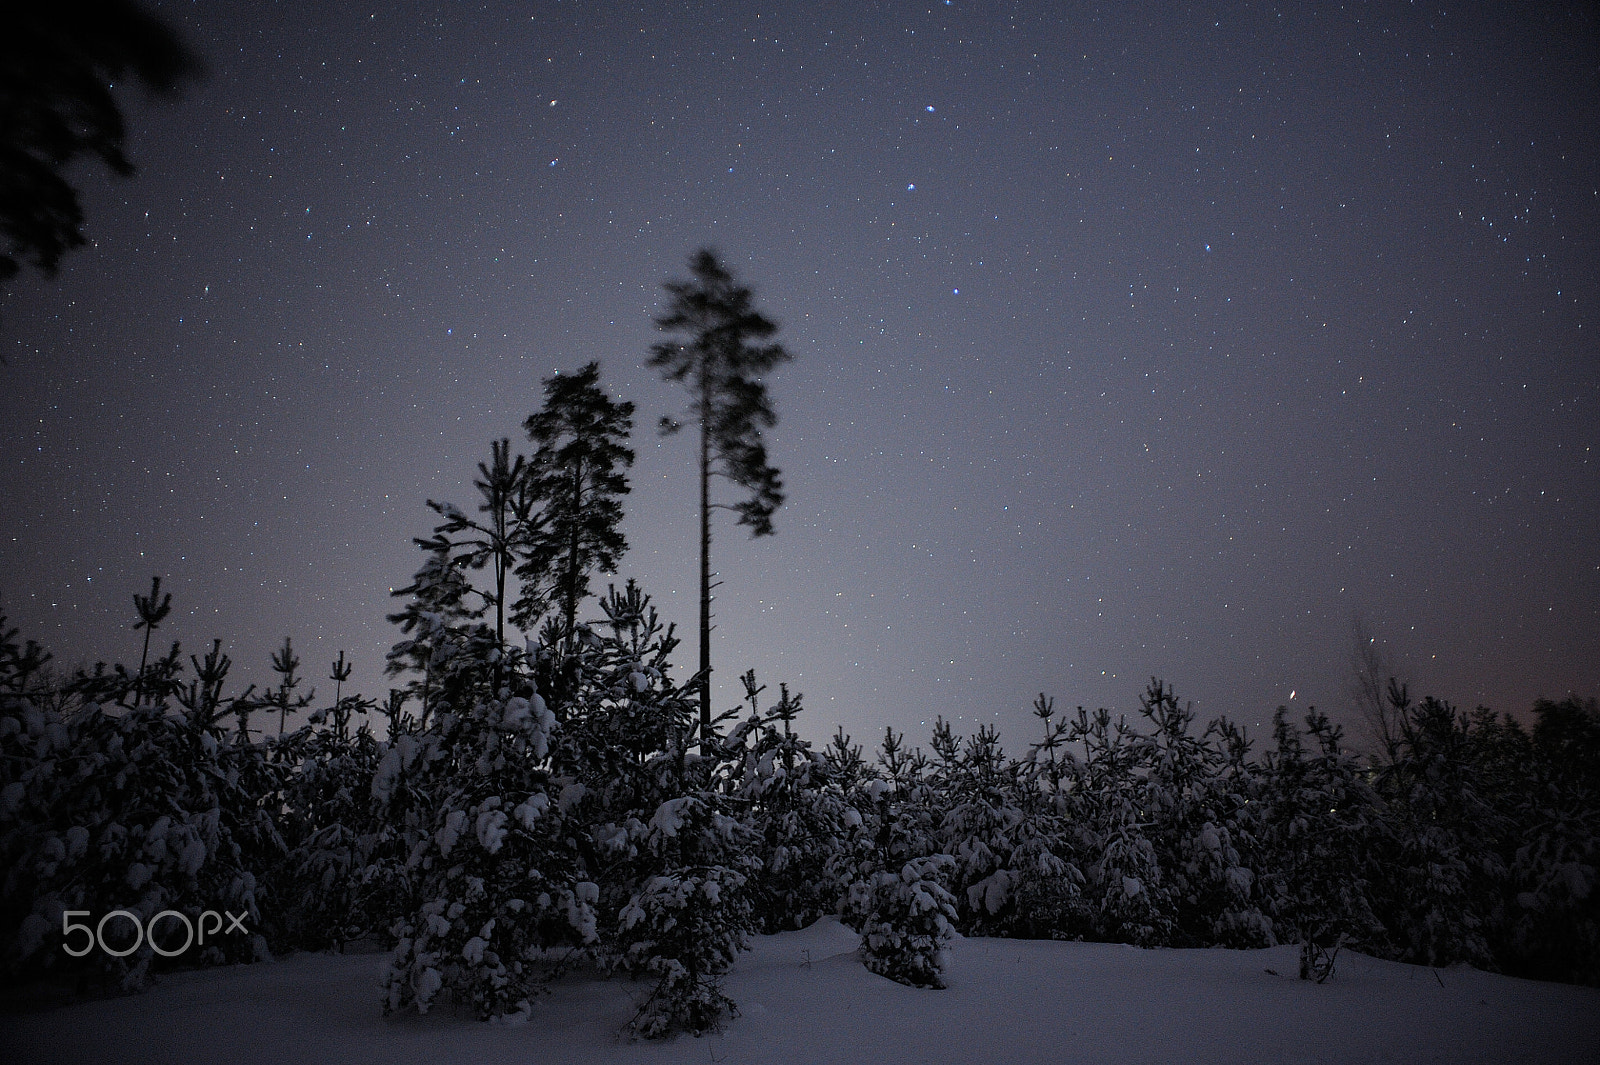 Nikon D700 sample photo. Winter fairytale photography